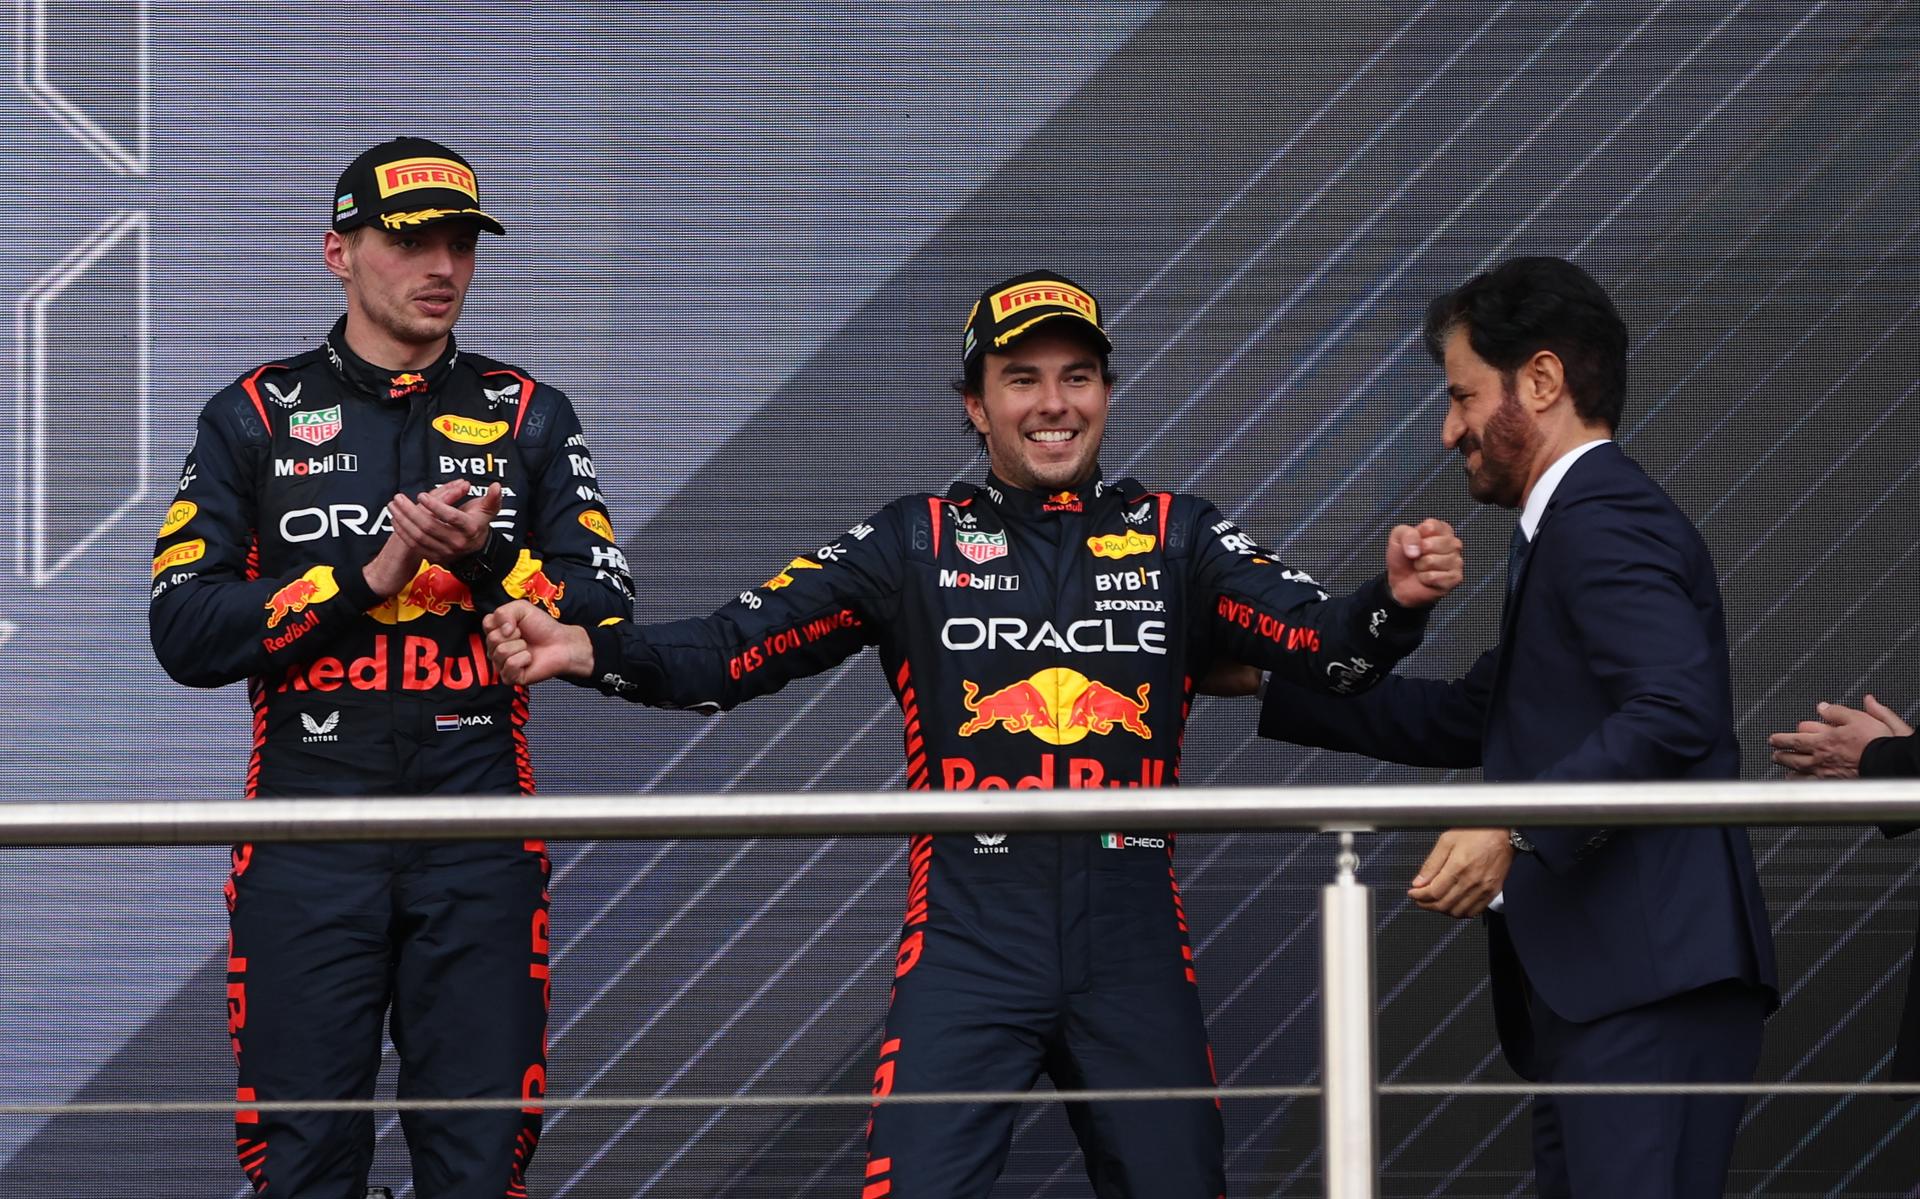 Checo Pérez, humiliat al box de Red Bull, l'ajudaran a guanyar Max Verstappen al Canadà